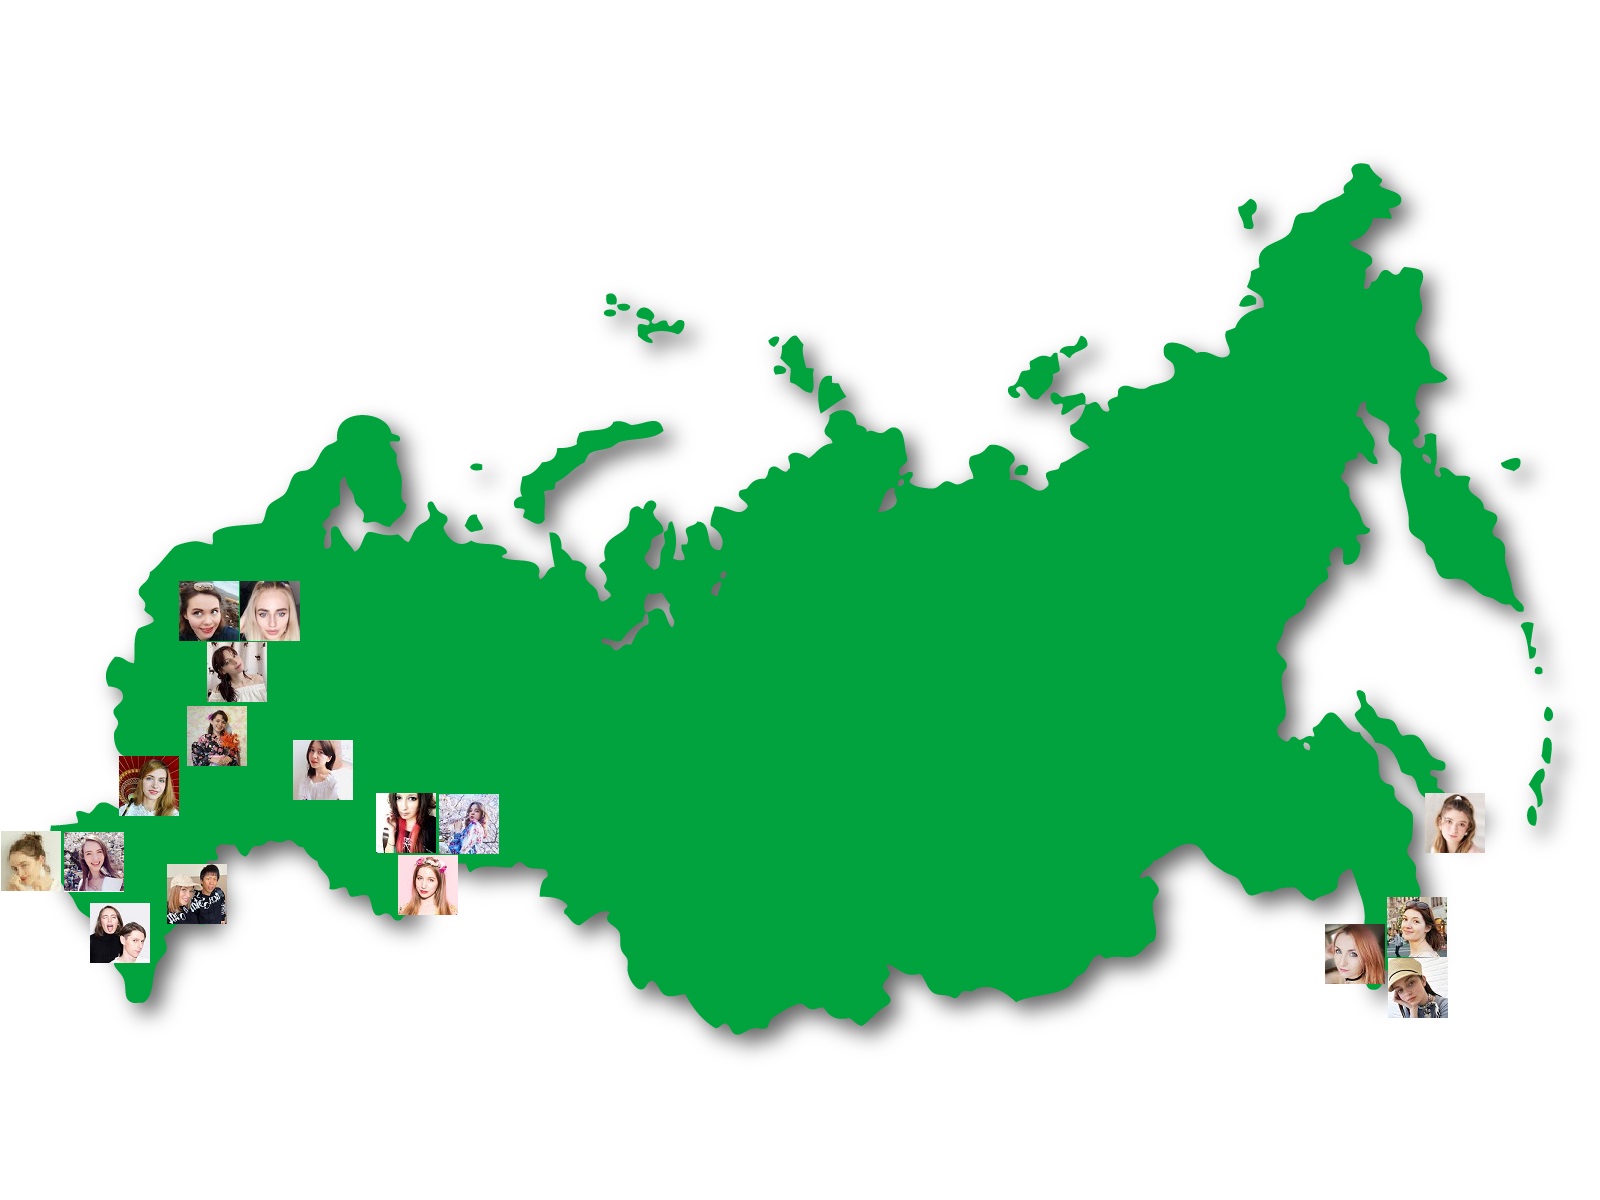 日本で活躍するロシア人女性youtuberの出身地一覧と人数が多い理由の考察 アンサー海外の反応